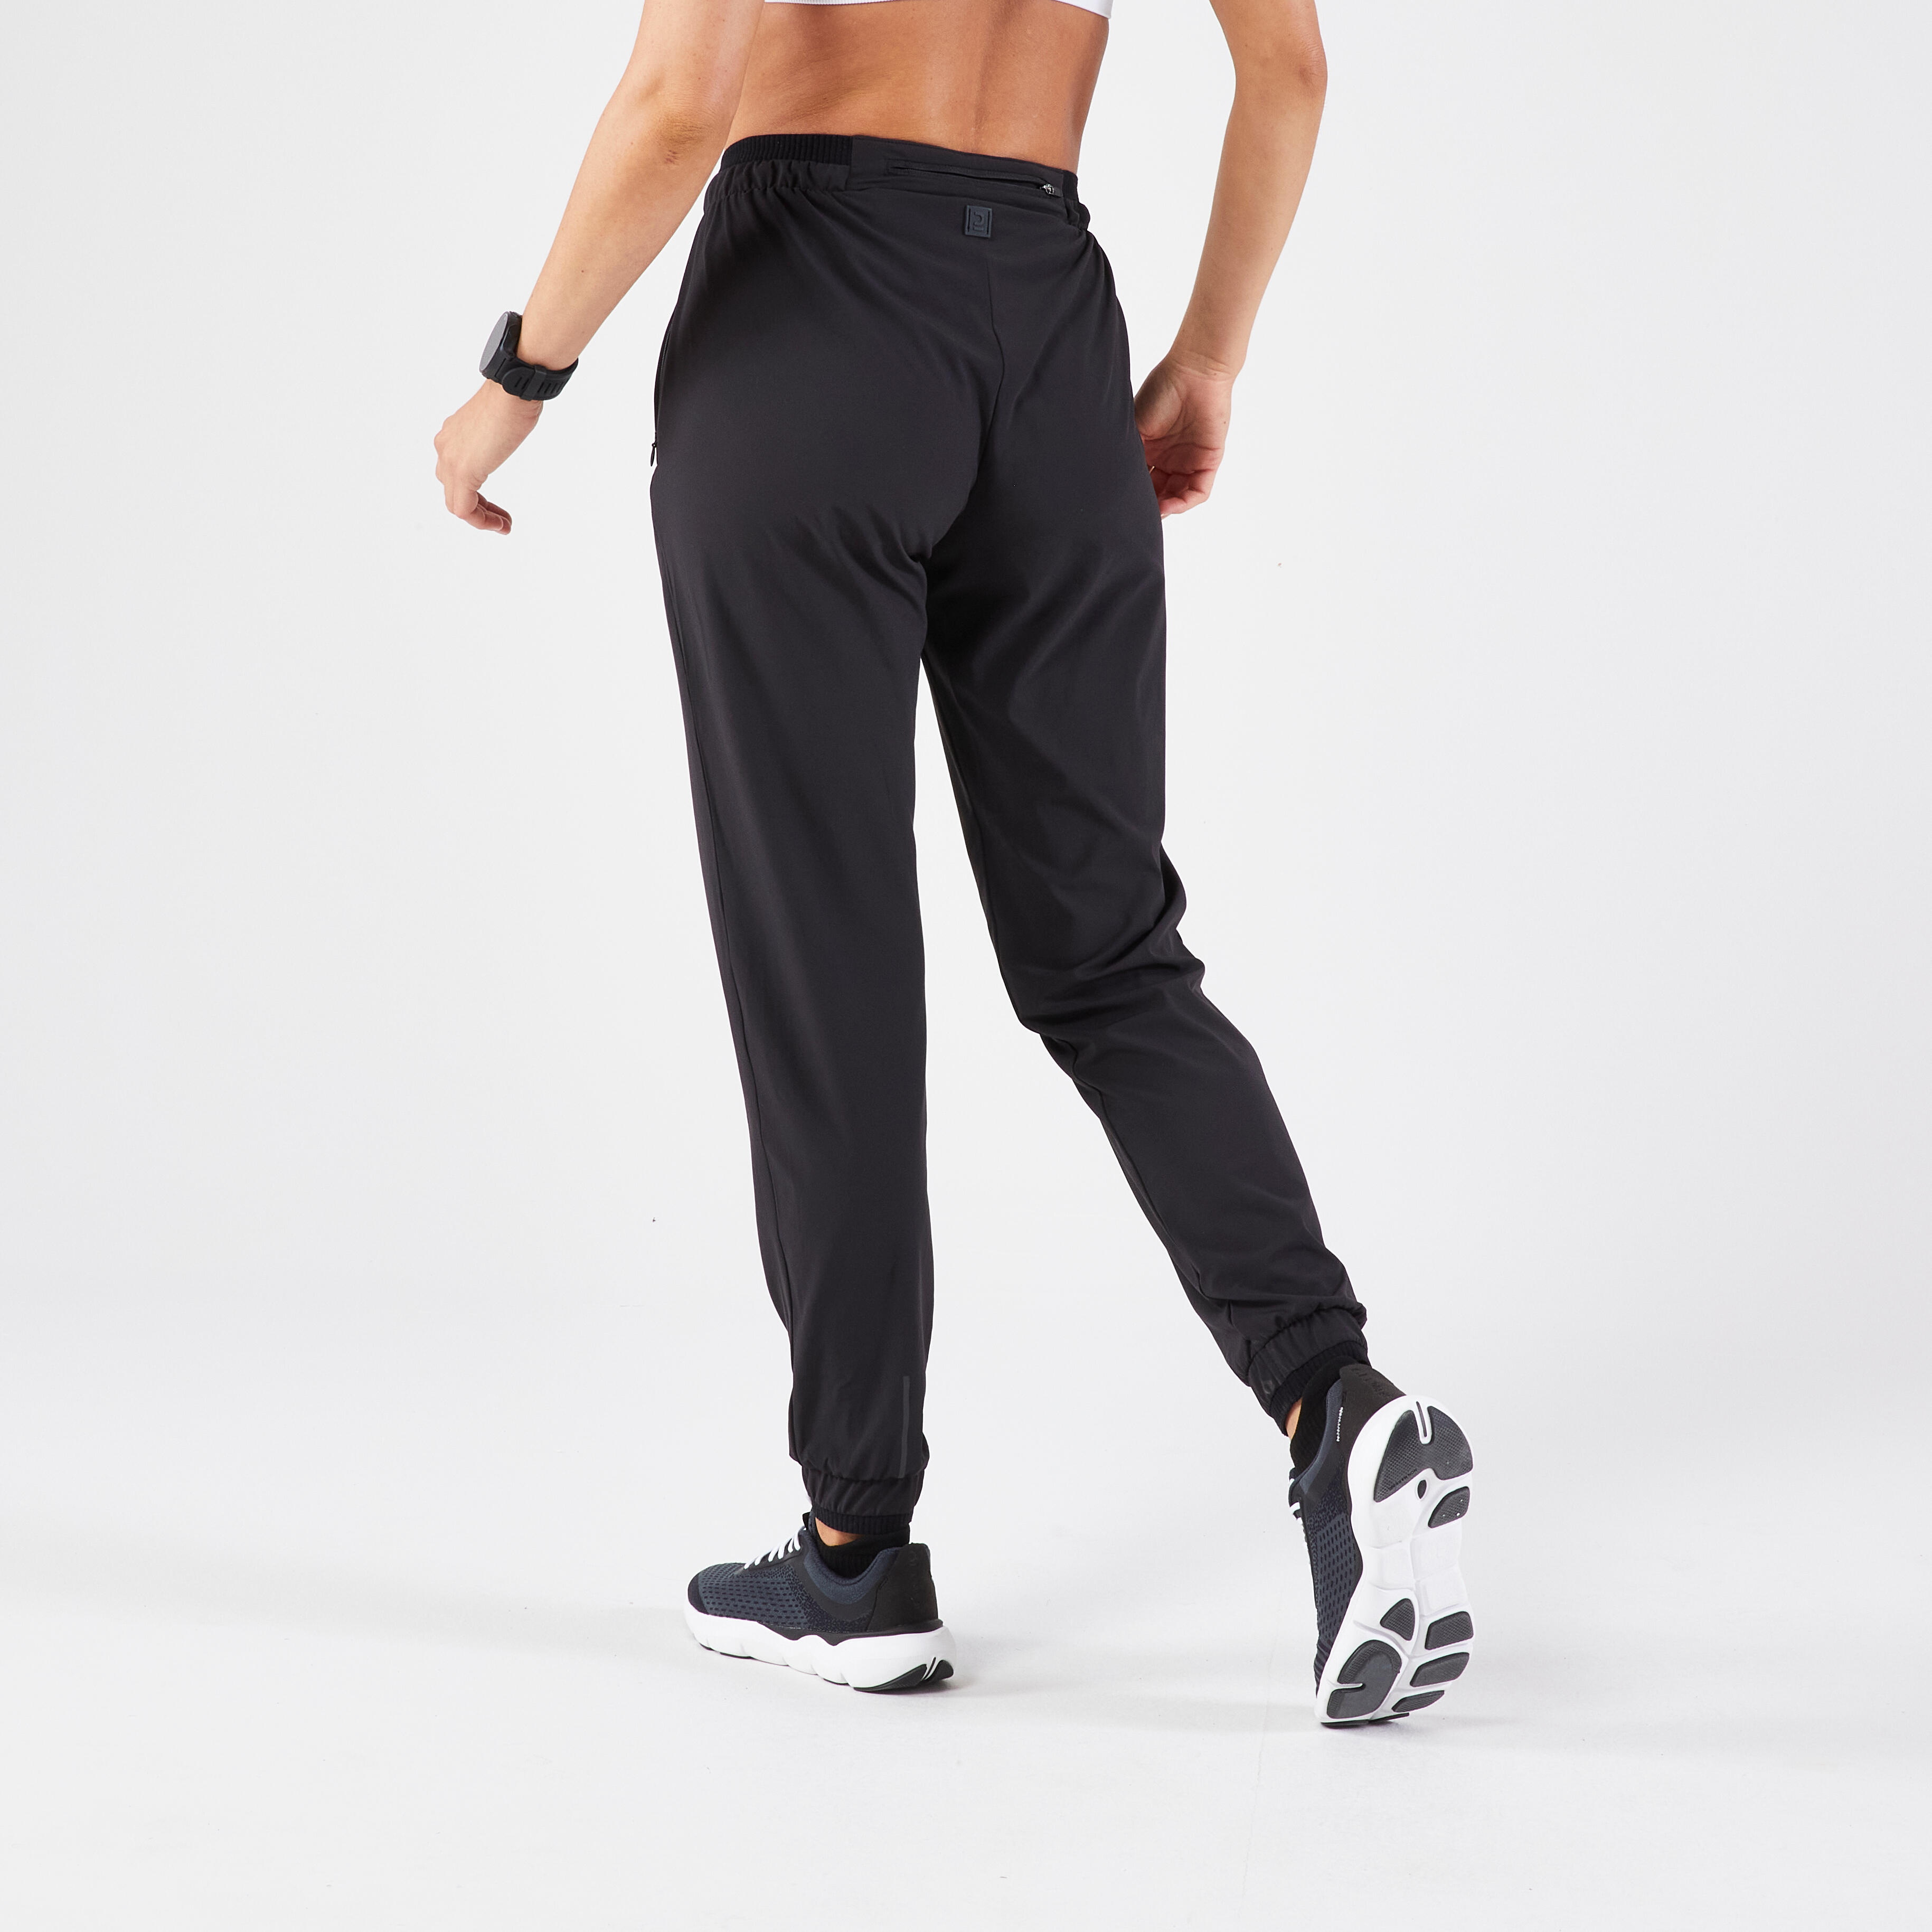 Buy Decathlon Pants Women online | Lazada.com.my